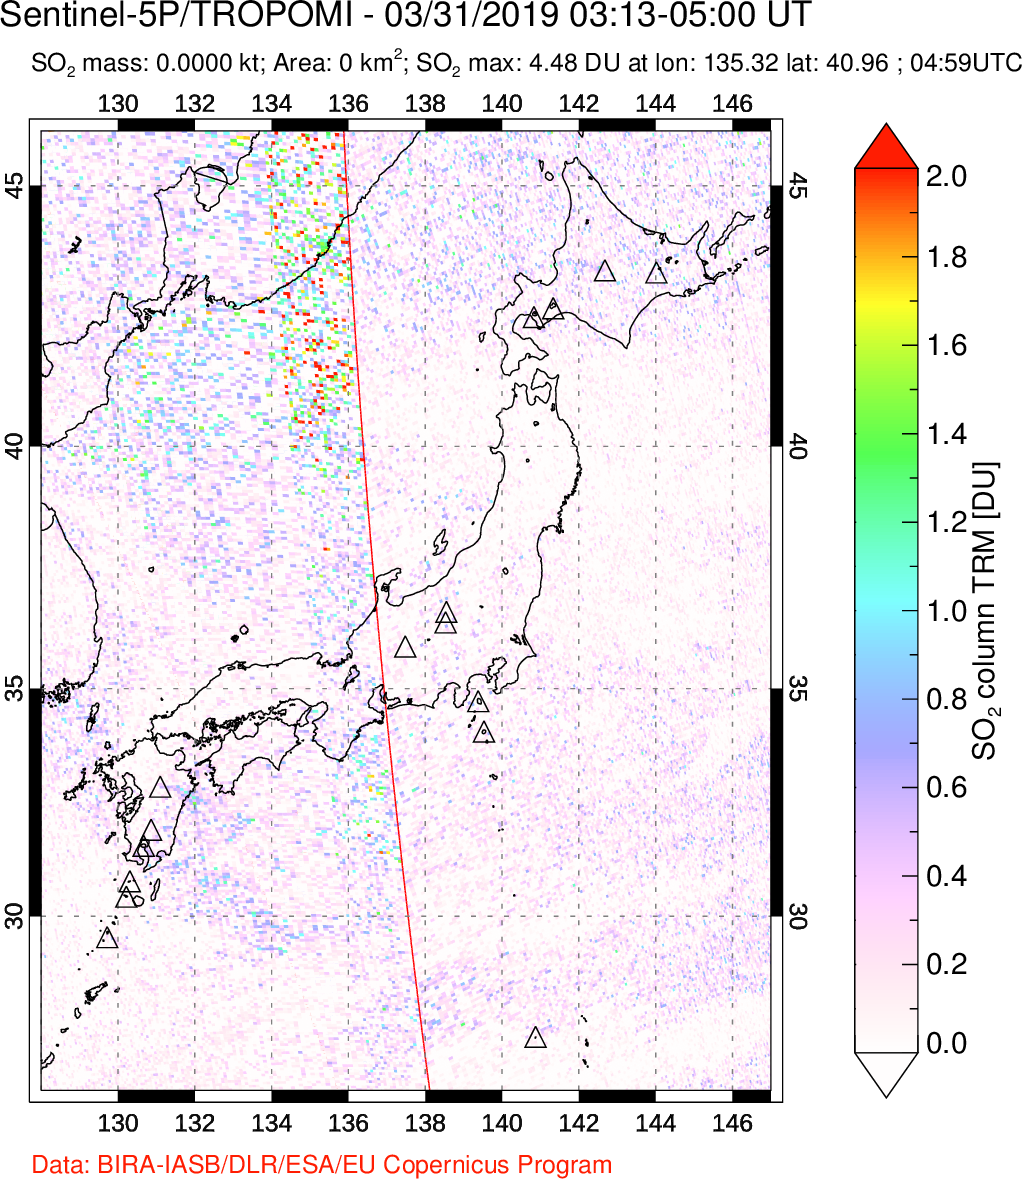 A sulfur dioxide image over Japan on Mar 31, 2019.